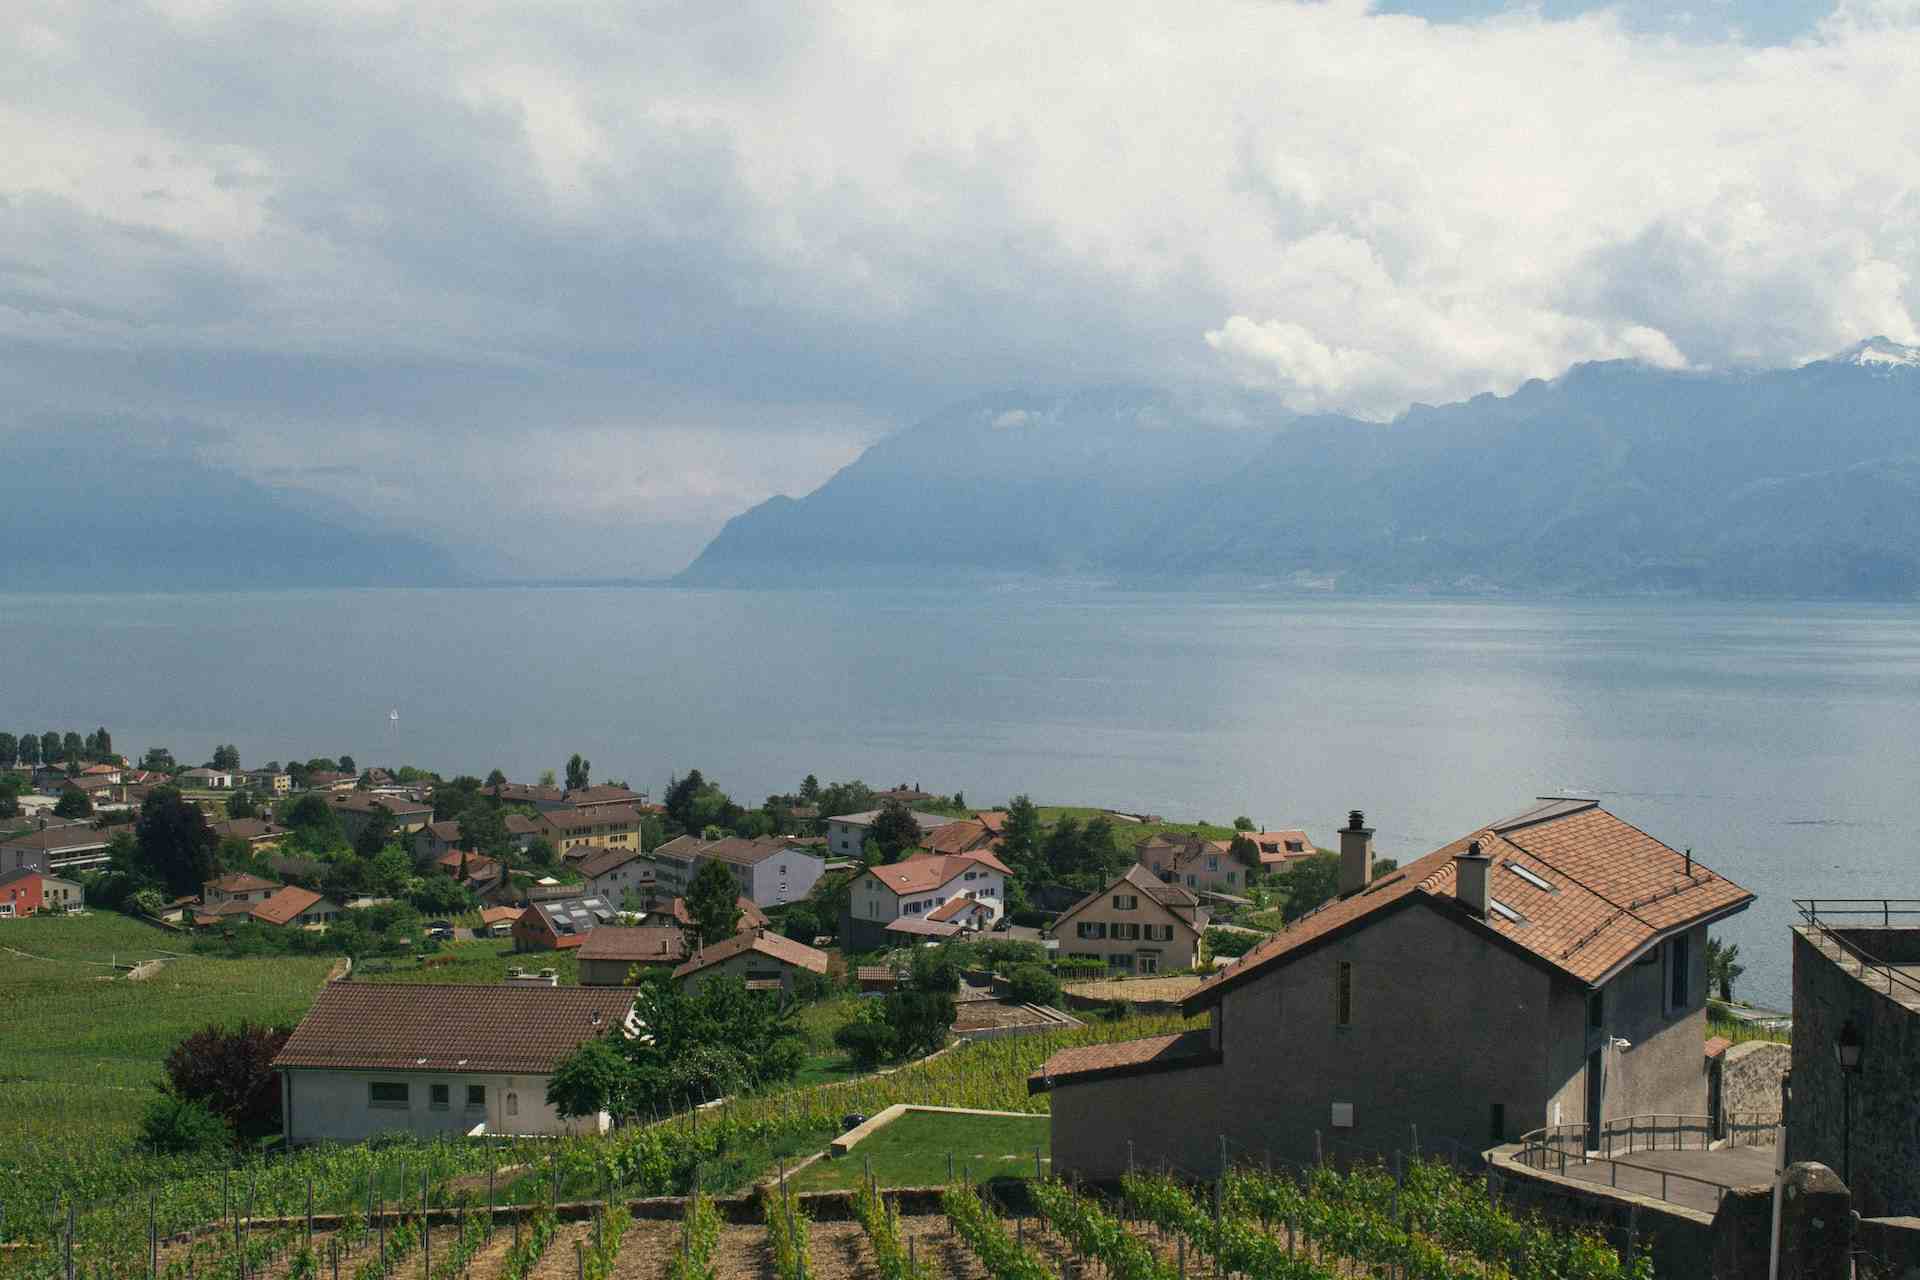 Magasin de la Fromagerie Gourmande, producteur à Montricher canton de Vaud en Suisse